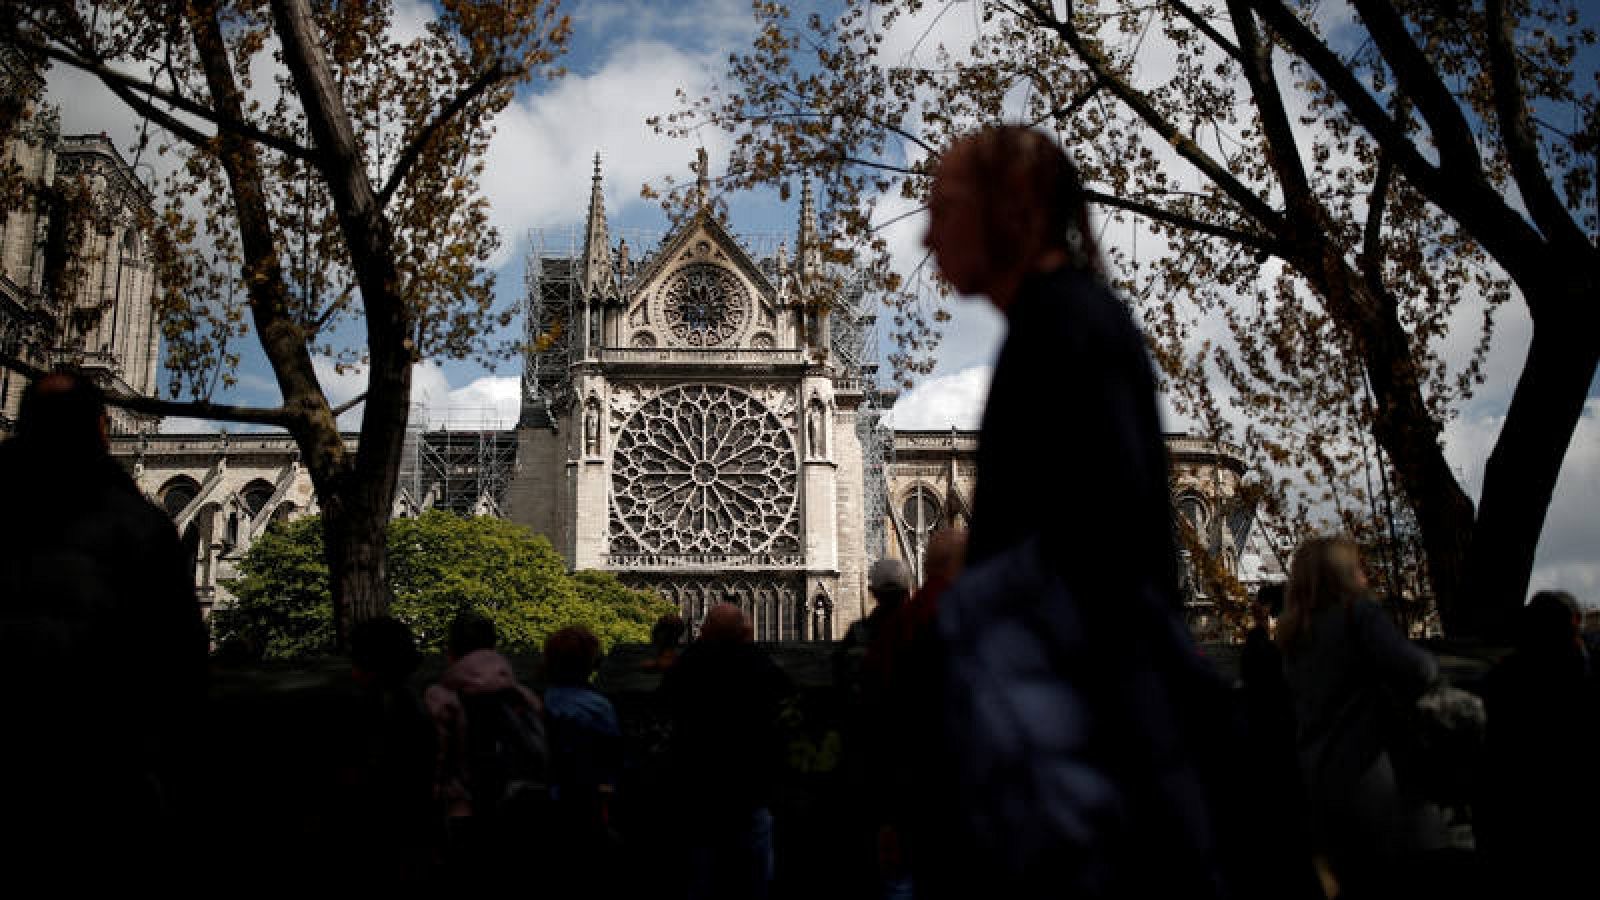  El Gobierno francés lanzará un concurso internacional de arquitectura para la reconstrucción de la aguja de Notre Dame